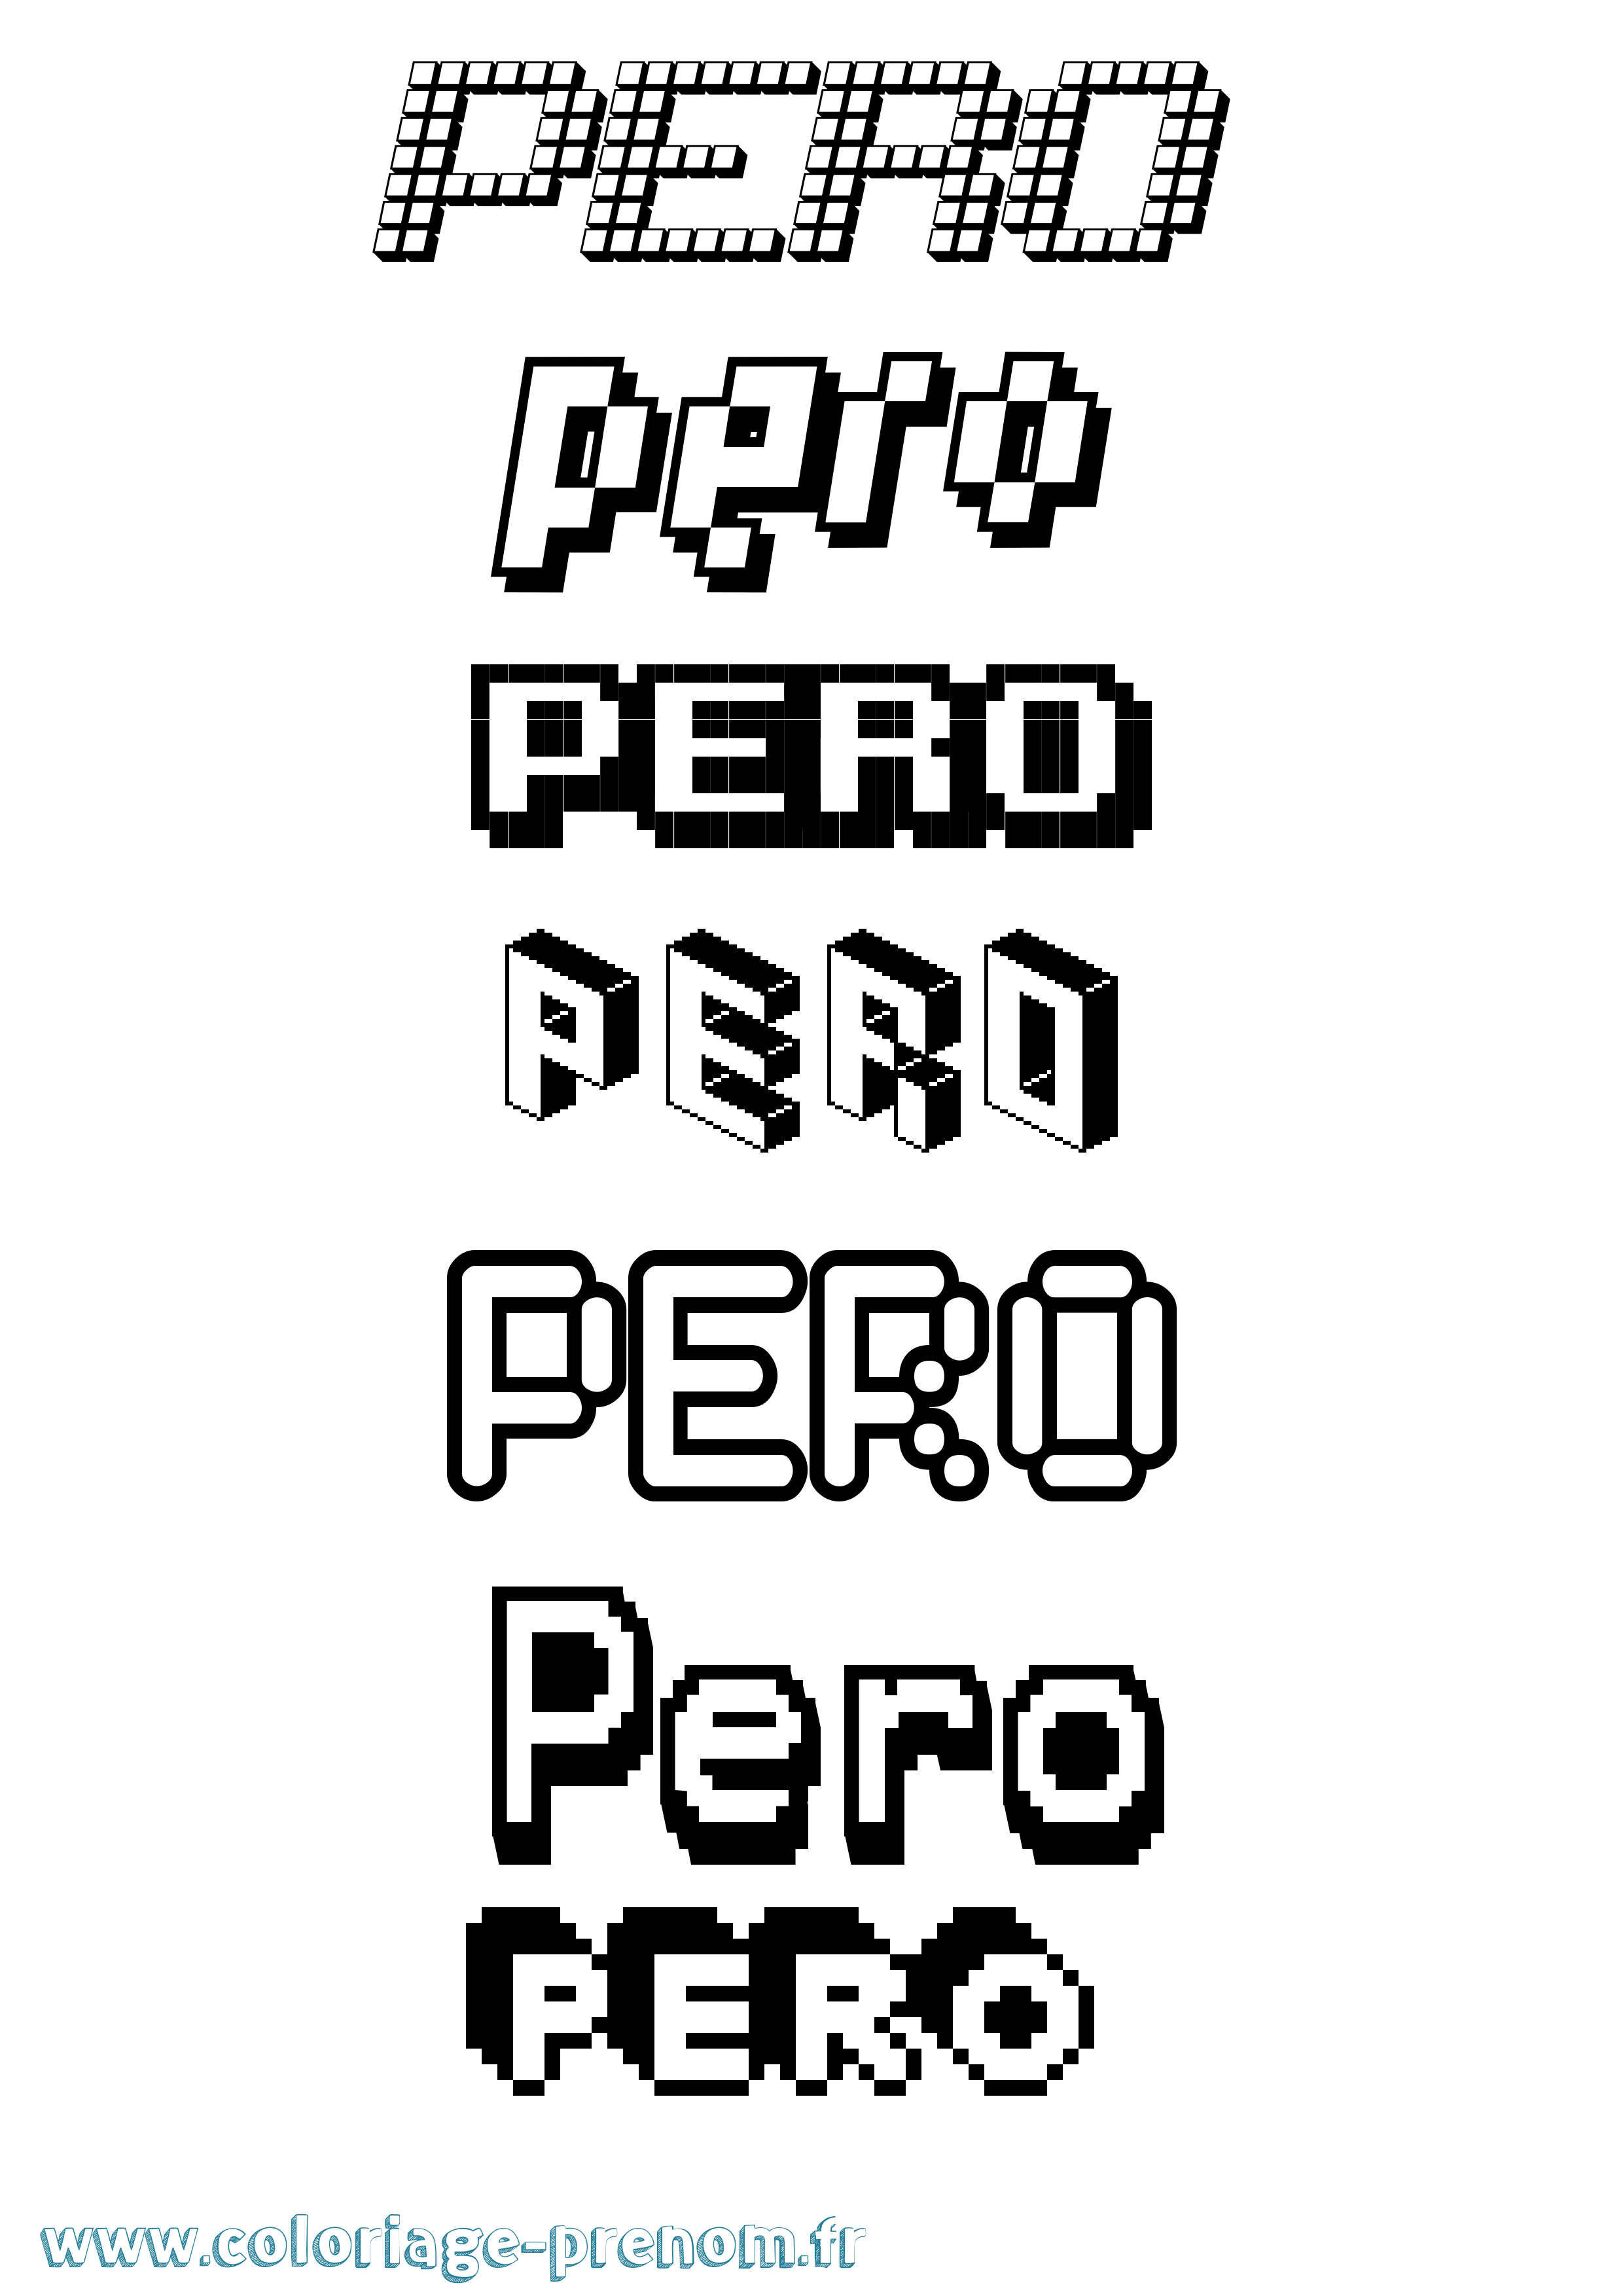 Coloriage prénom Pero Pixel